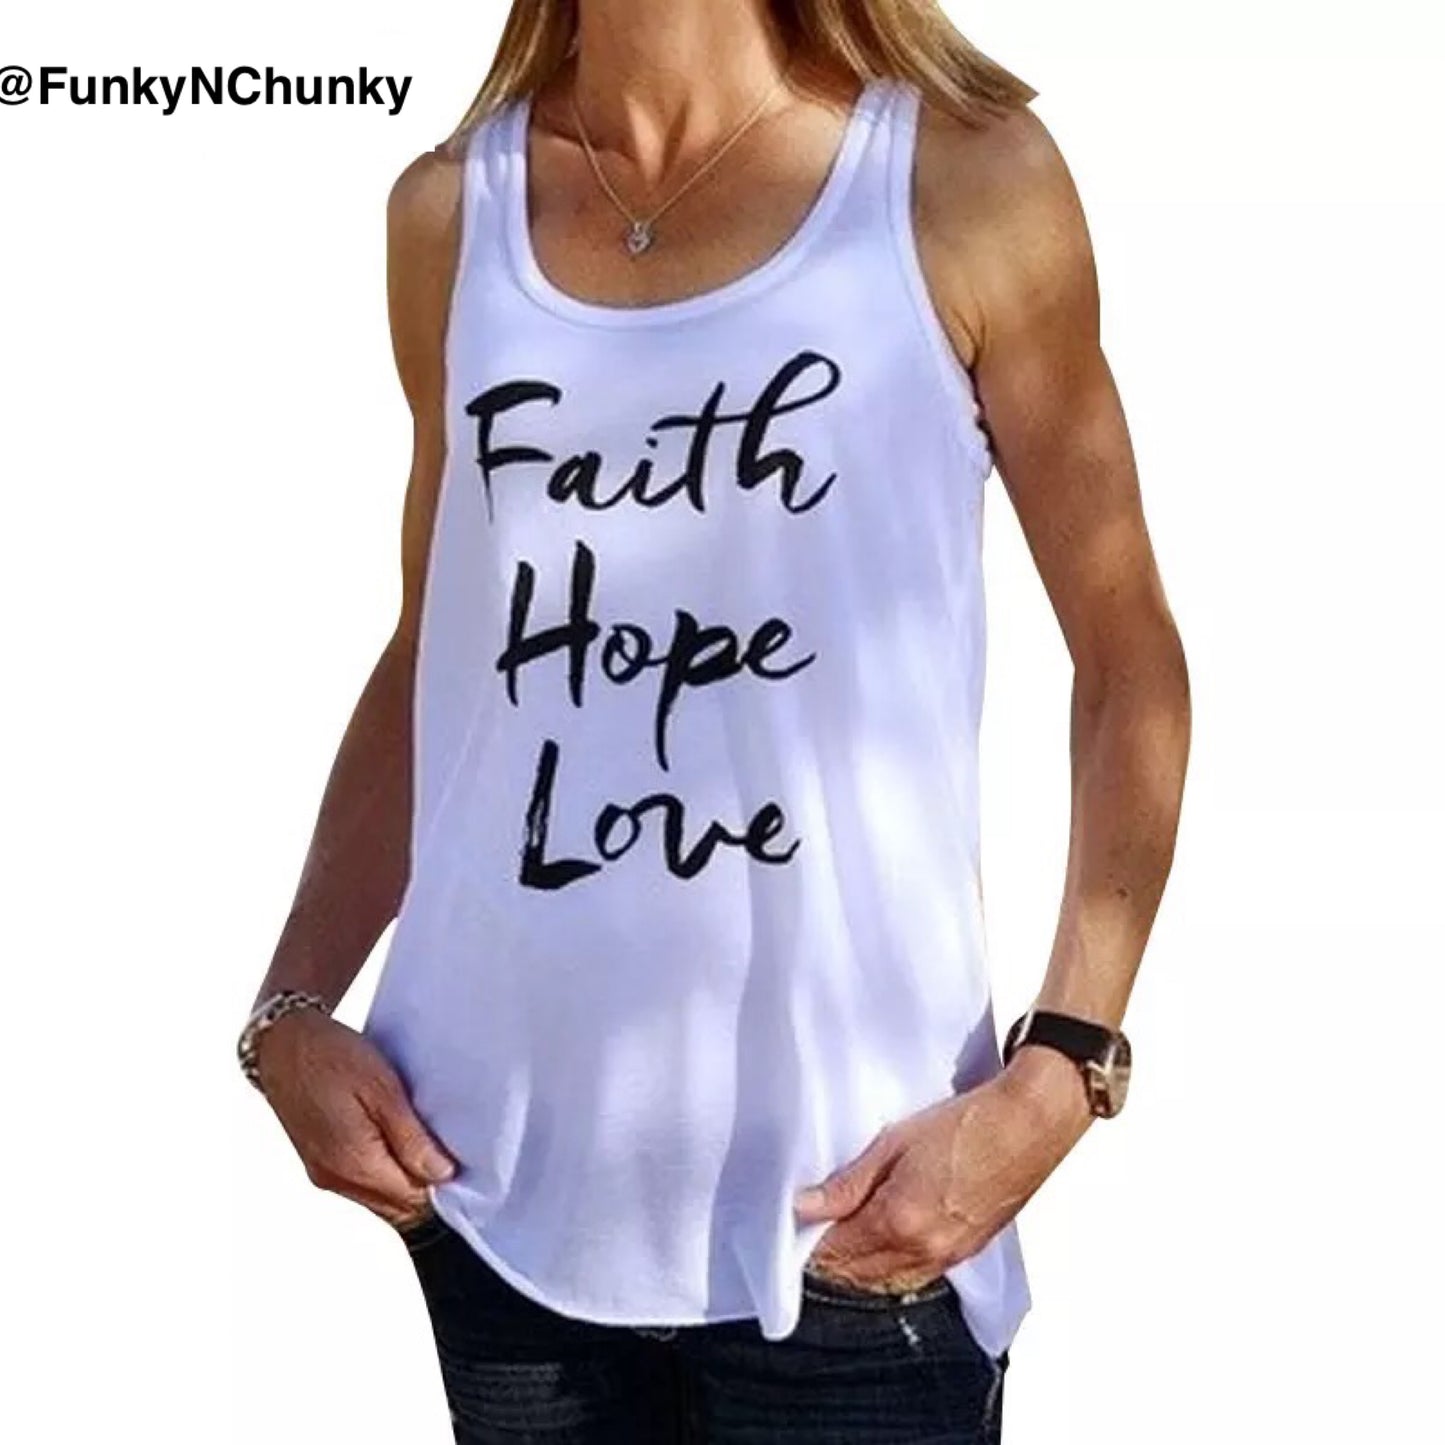 Faith Hope Love - Tank top